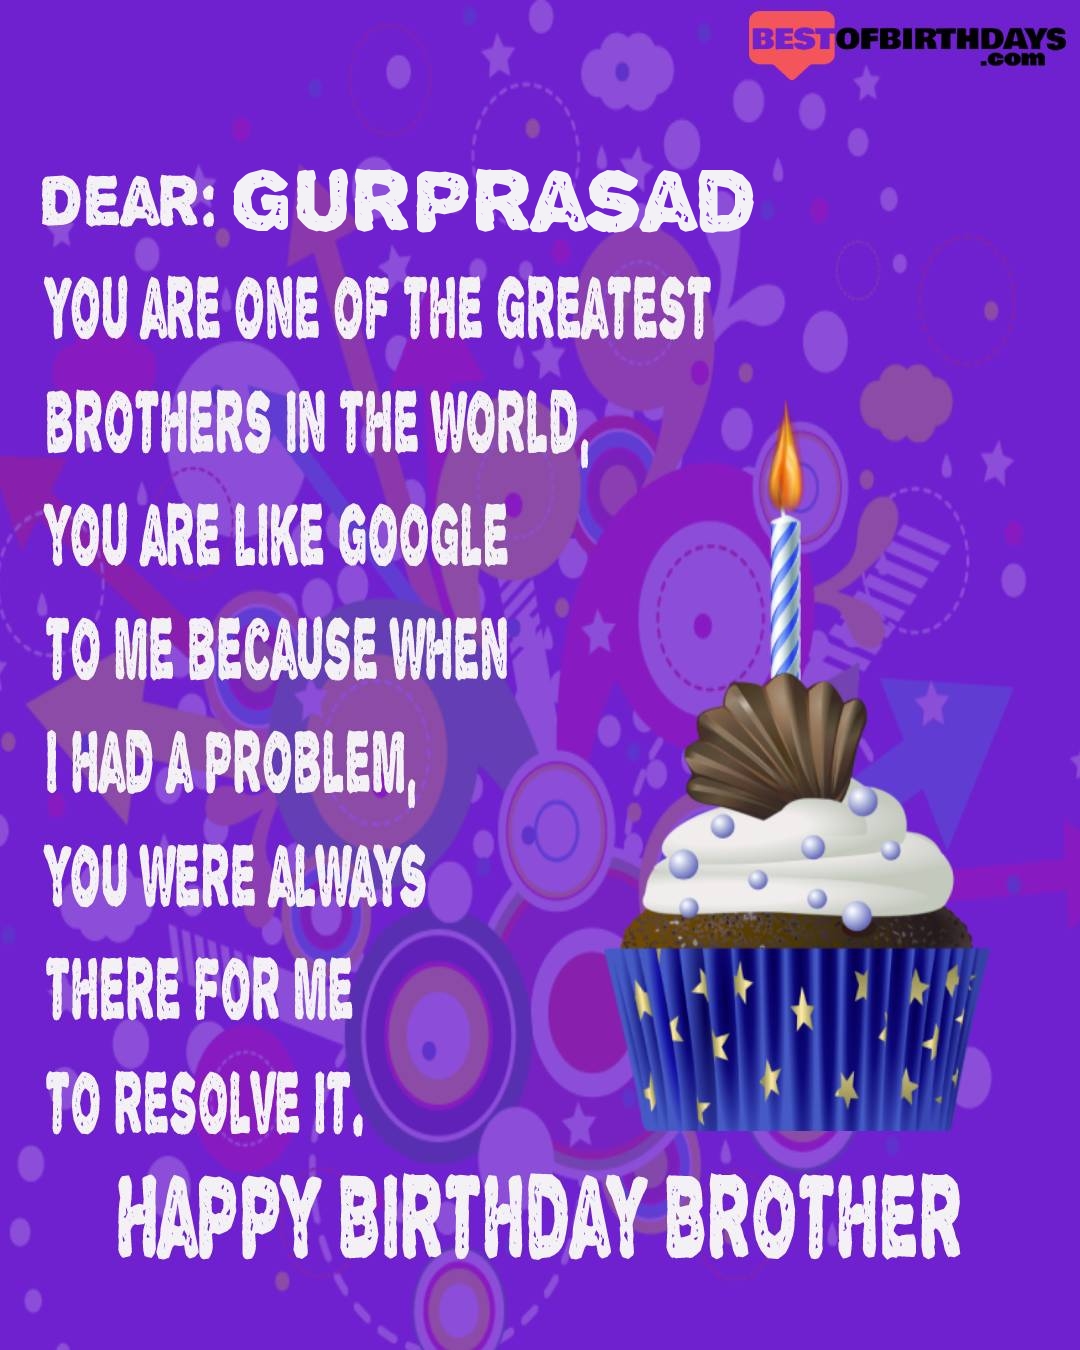 Happy birthday gurprasad bhai brother bro